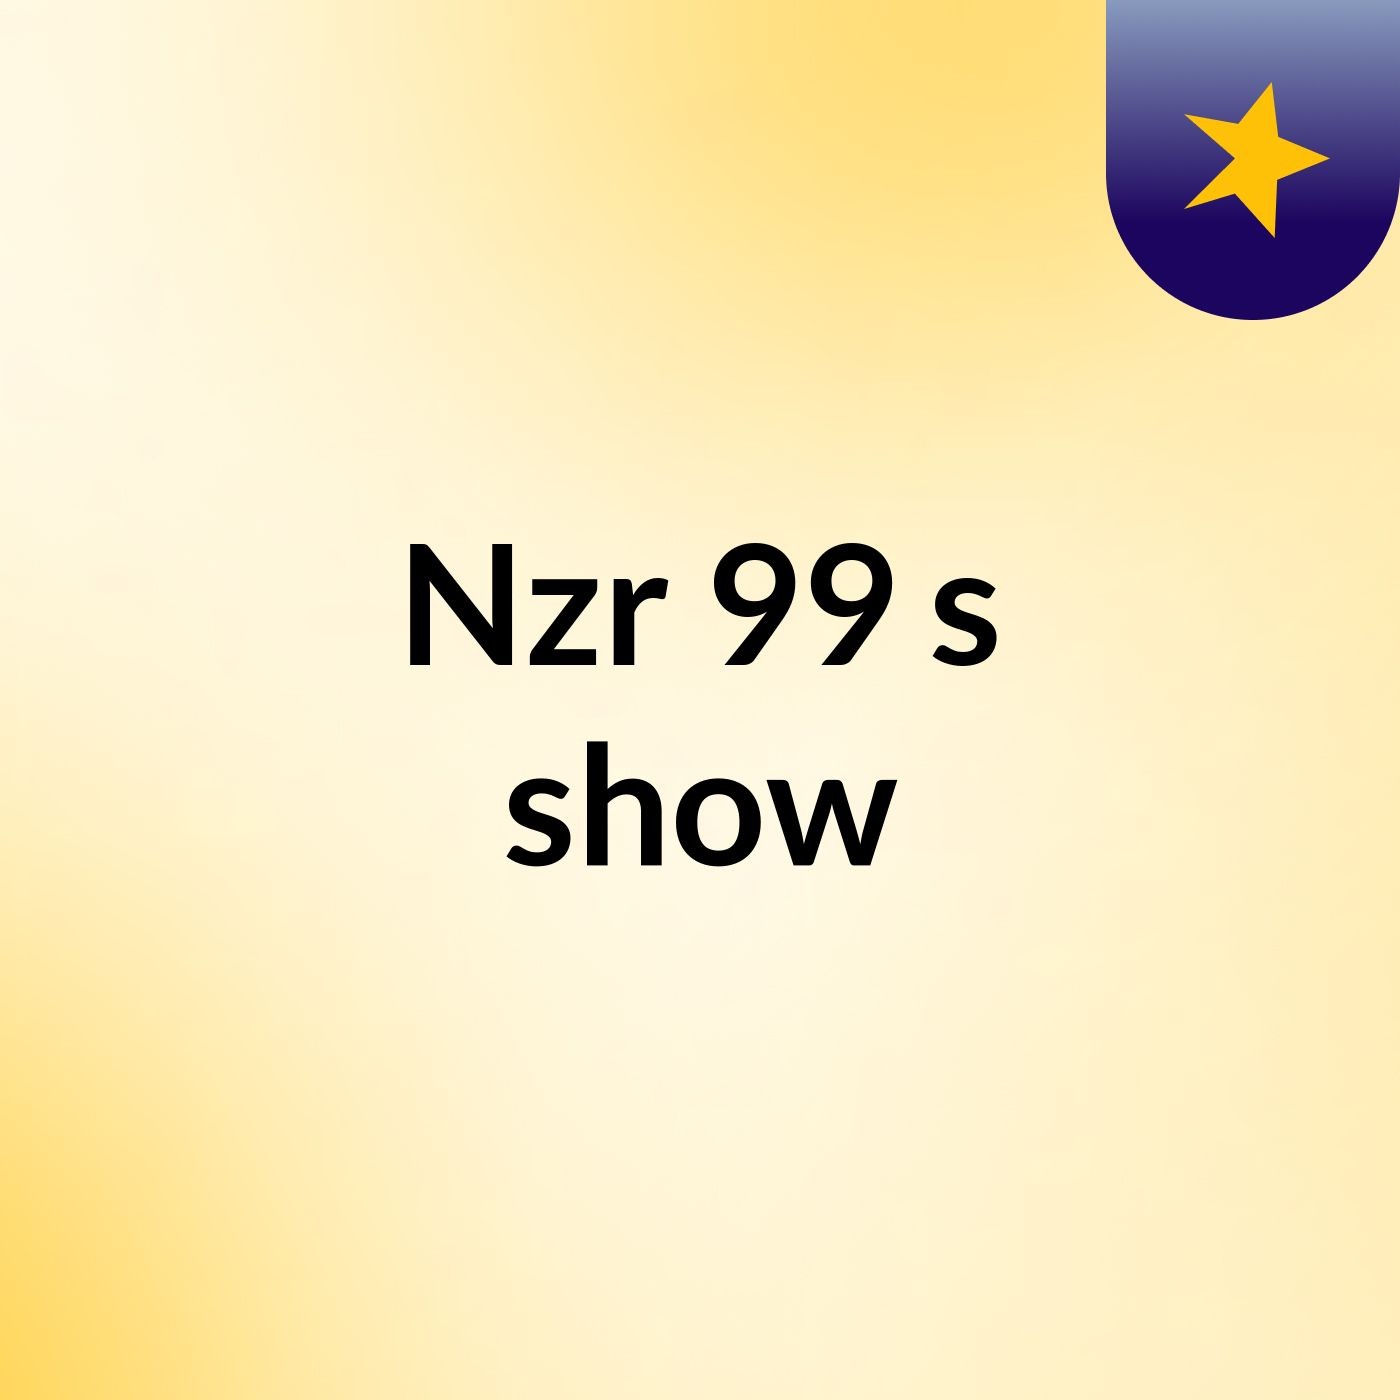 Nzr 99's show